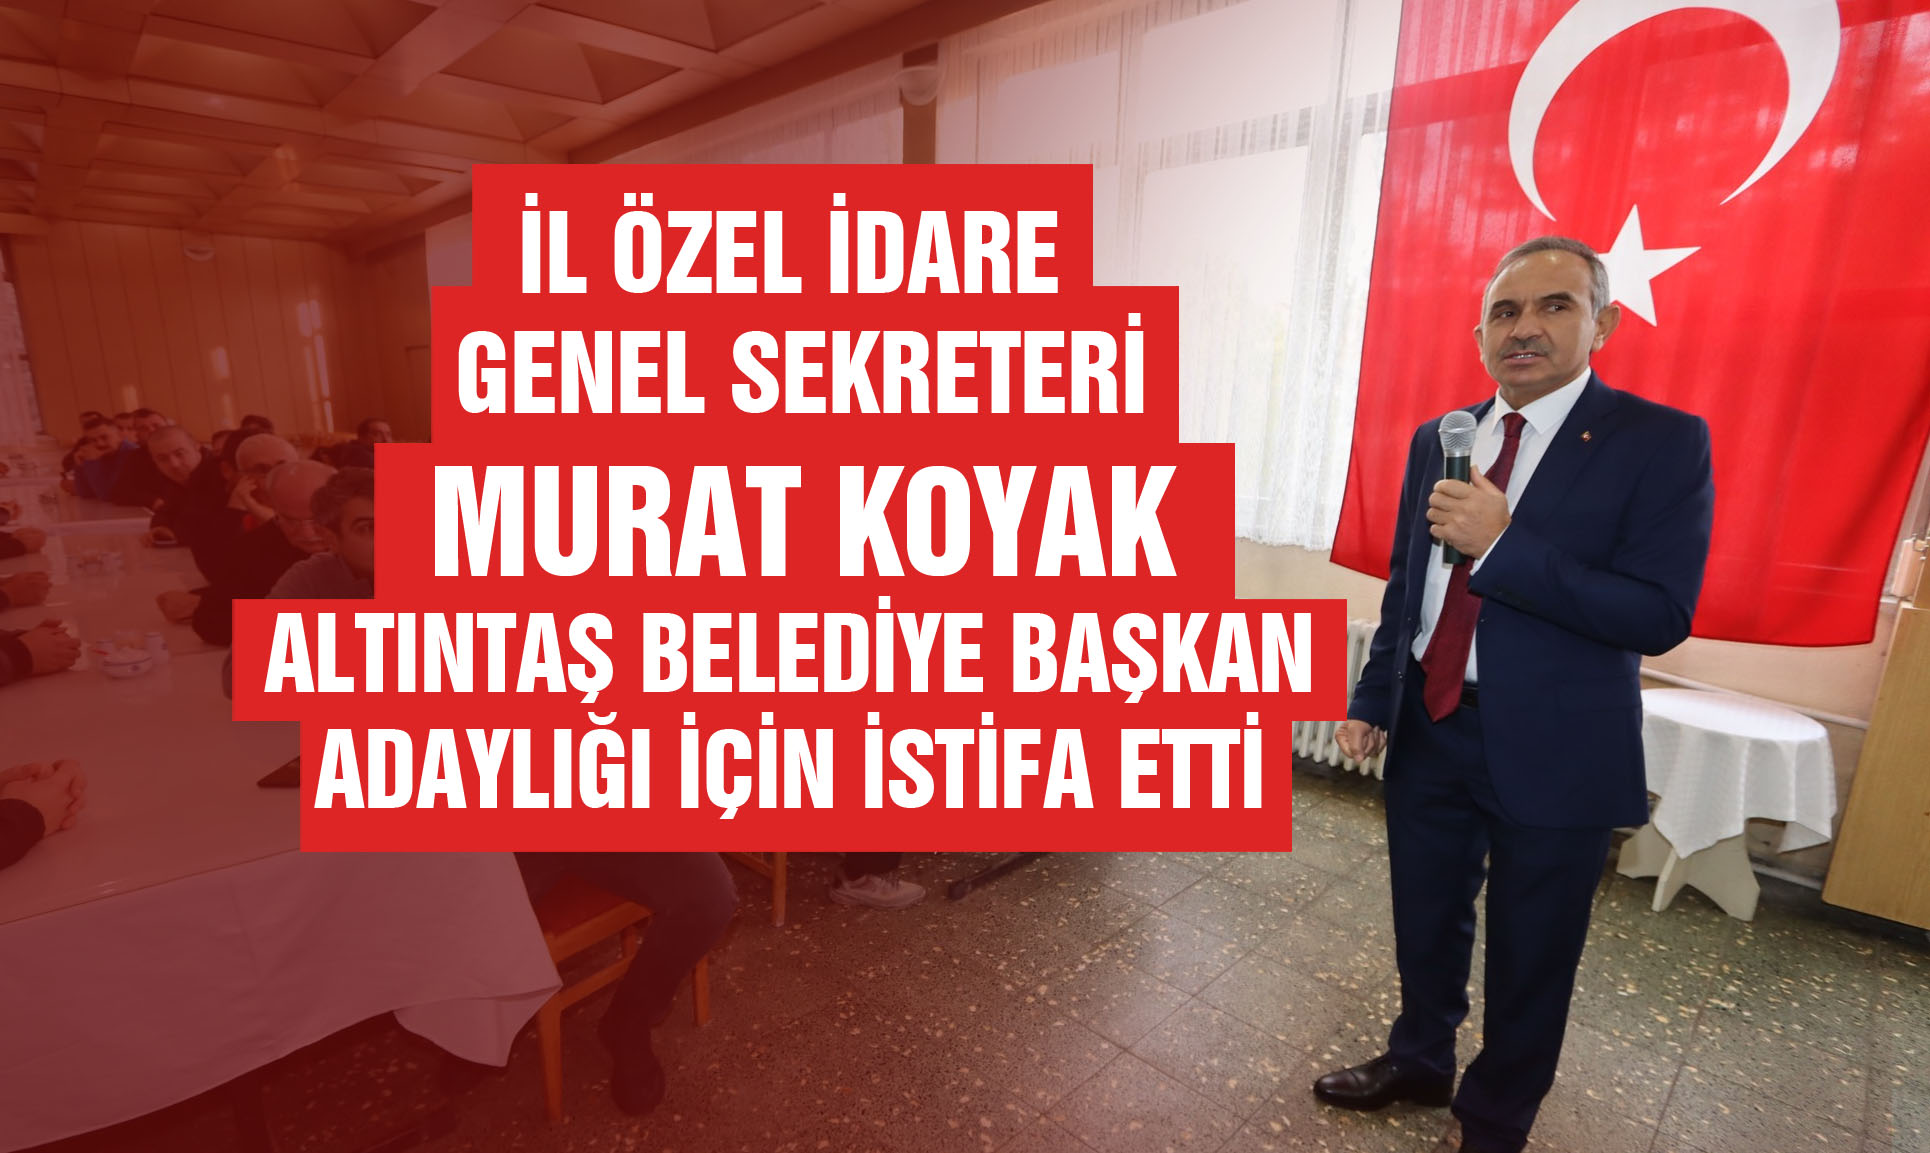 Murat Koyak, adaylık için istifa etti